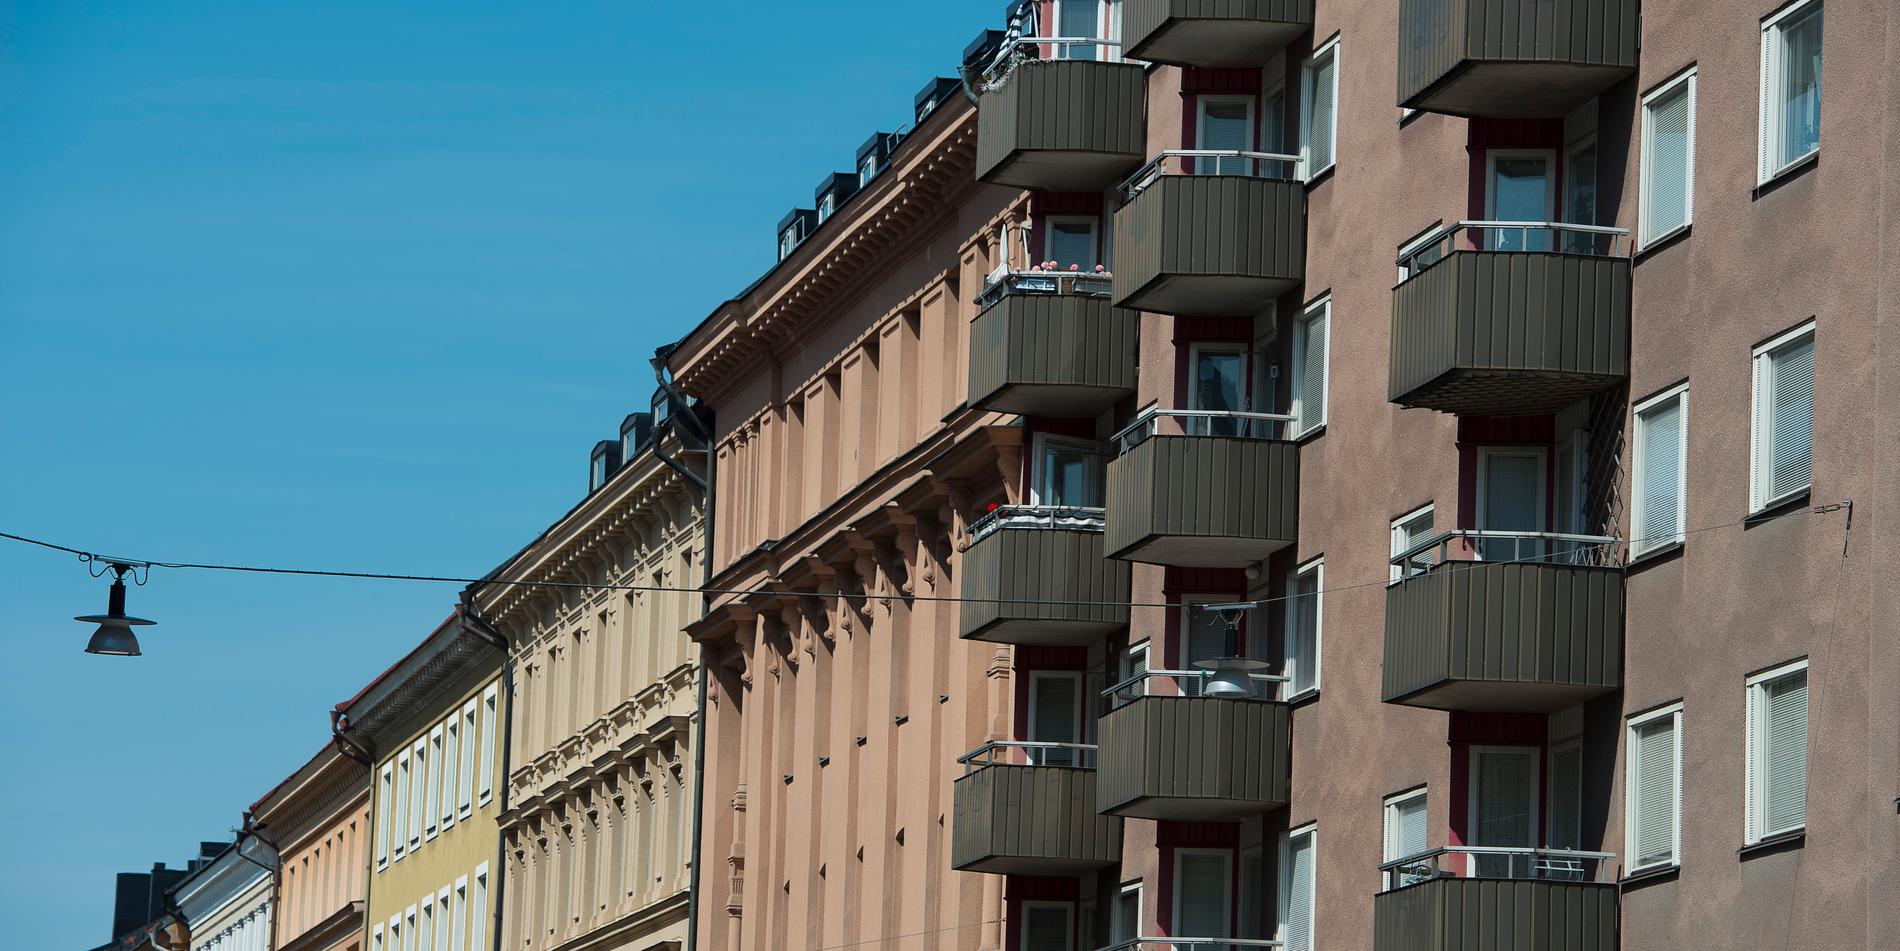 Fastighetsägarna vill höja hyrorna i Stockholm med 3,5 procent efter nyår, uppger svt.